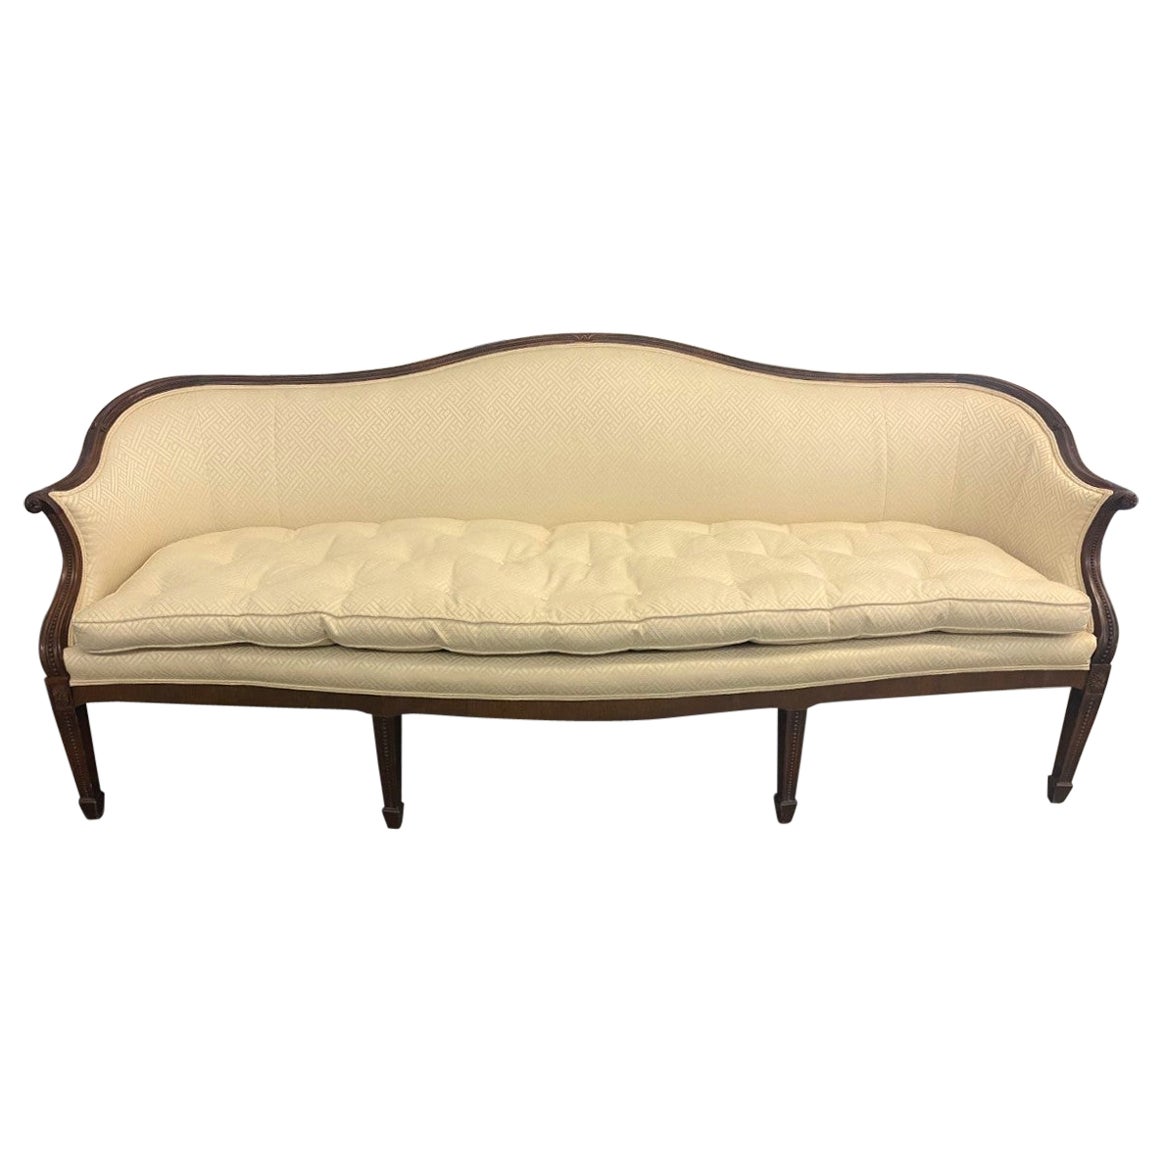 Mahagoni-Sofa in Serpentinenform im Hepplewhite-Stil mit Pfirsich- und Blattwerkschnitzerei